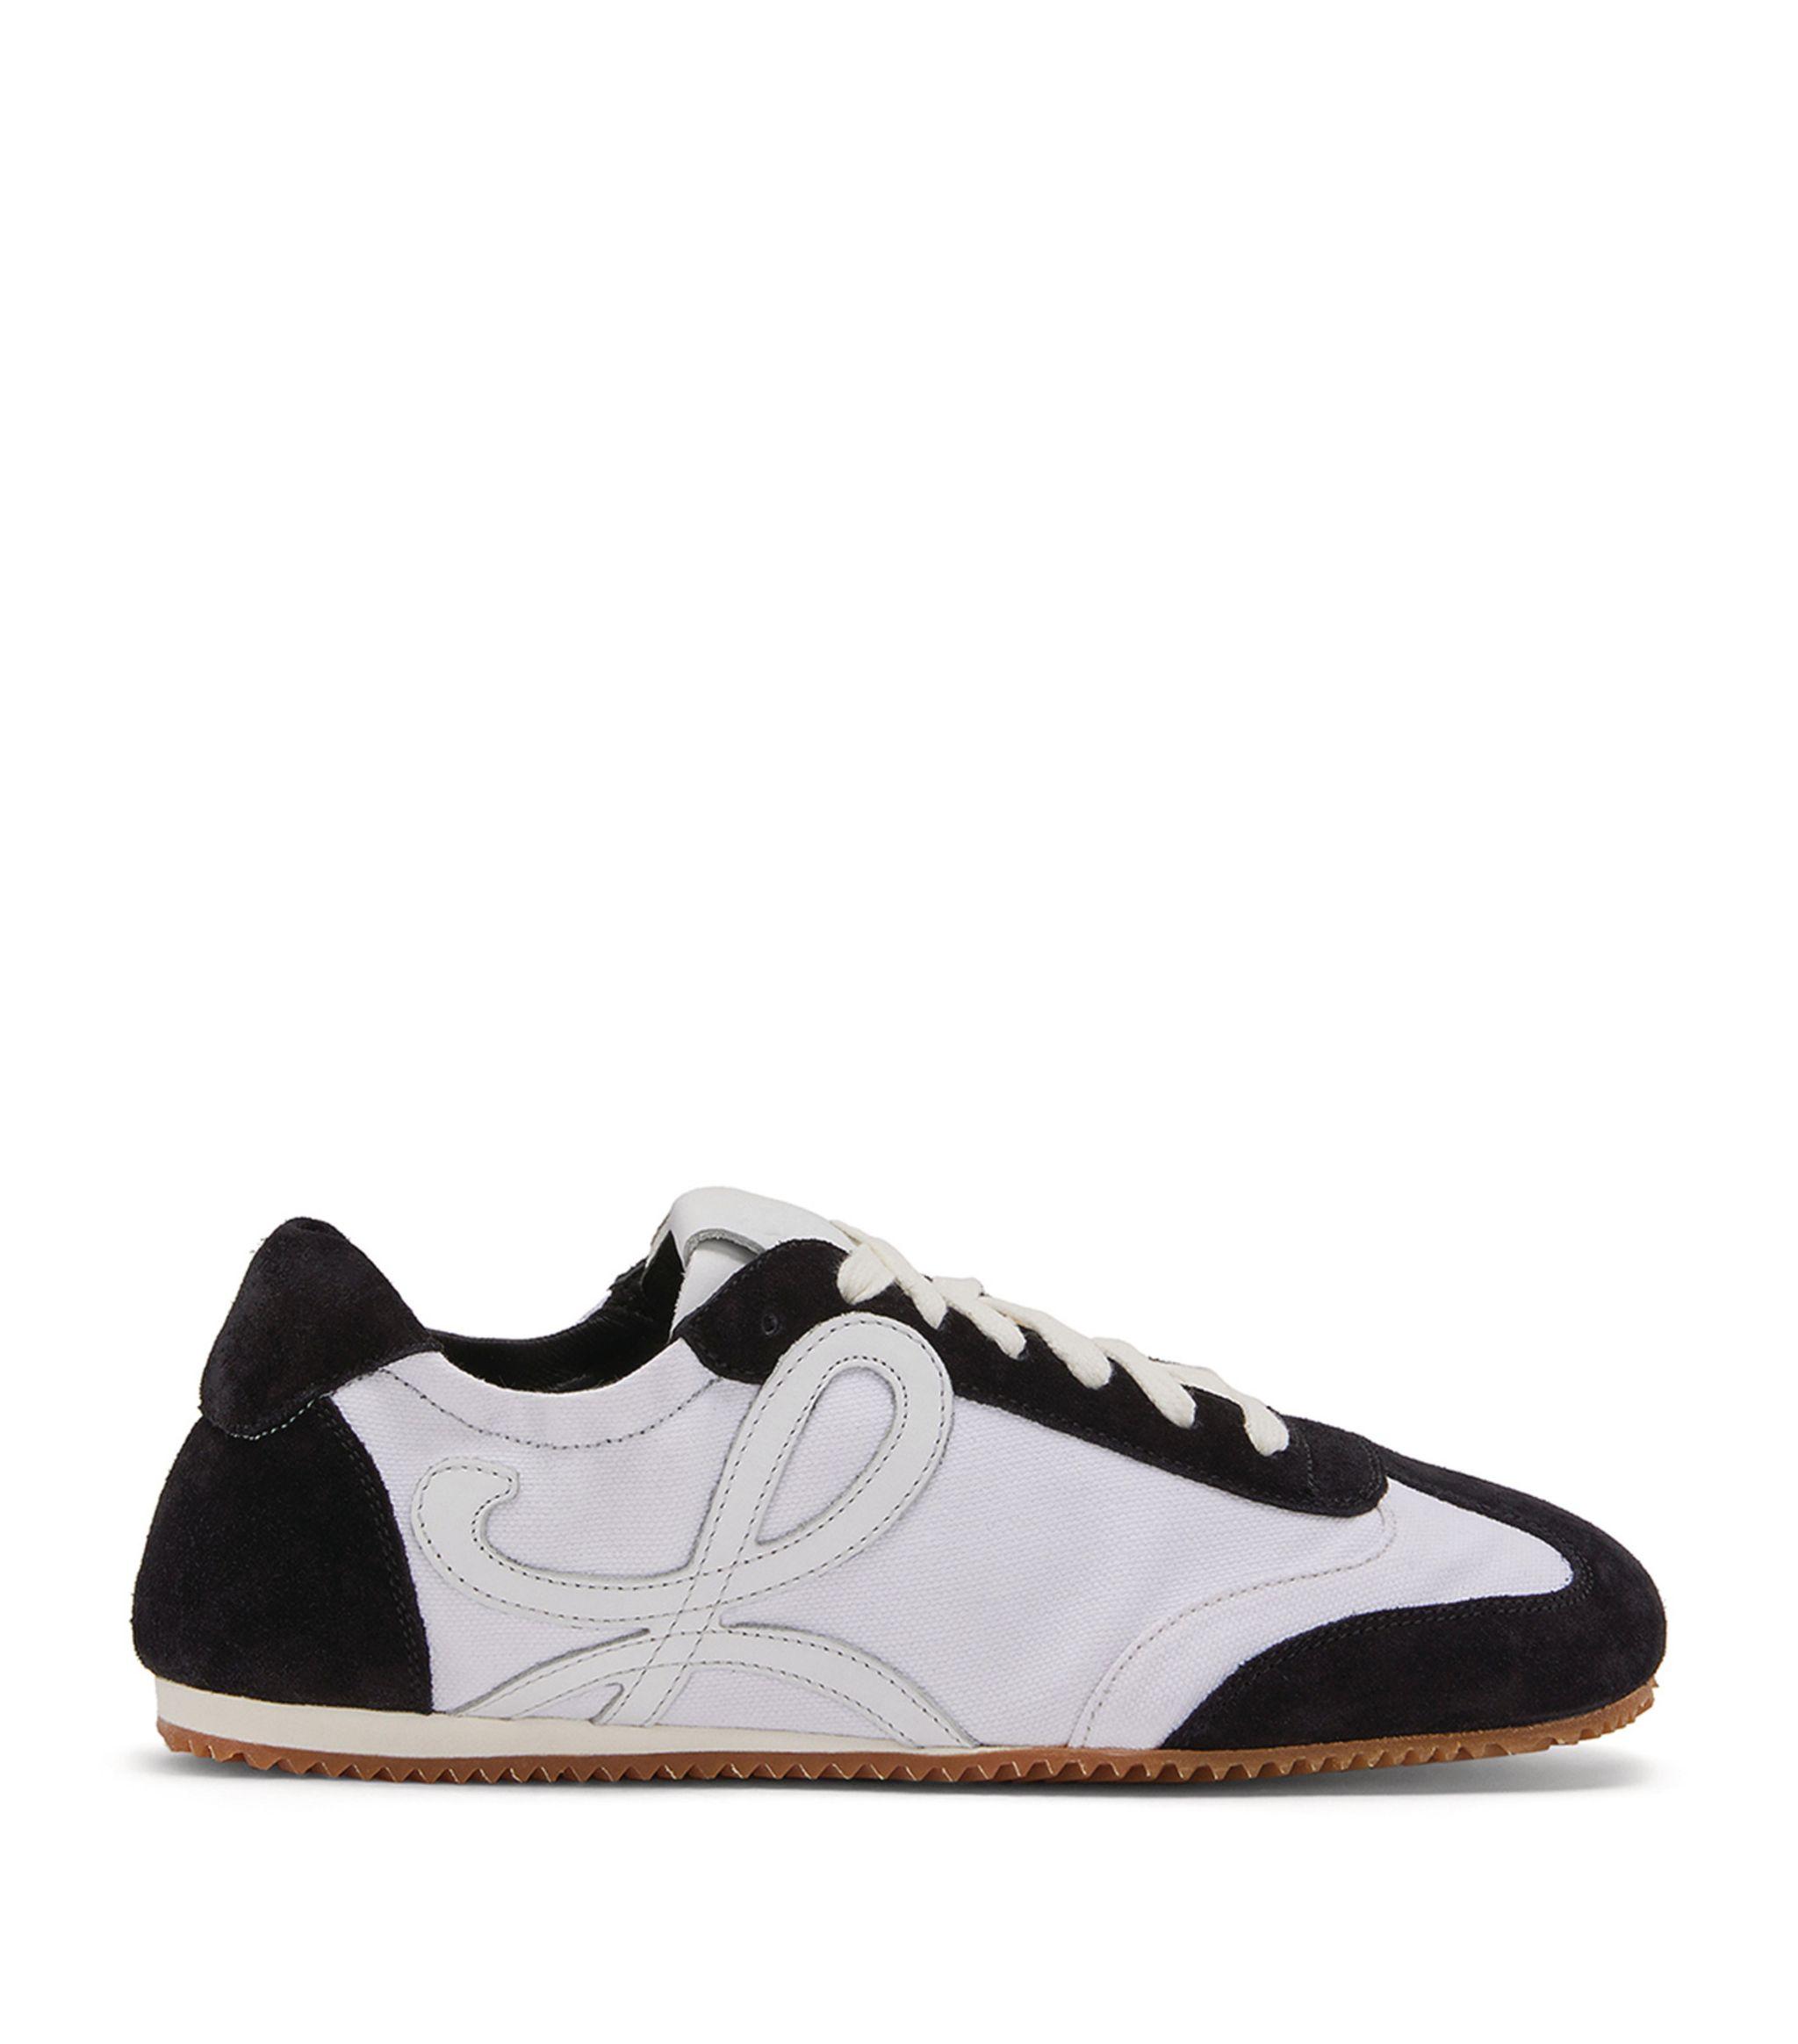 Loewe Leather Ballet Runner Sneakers in White - Lyst